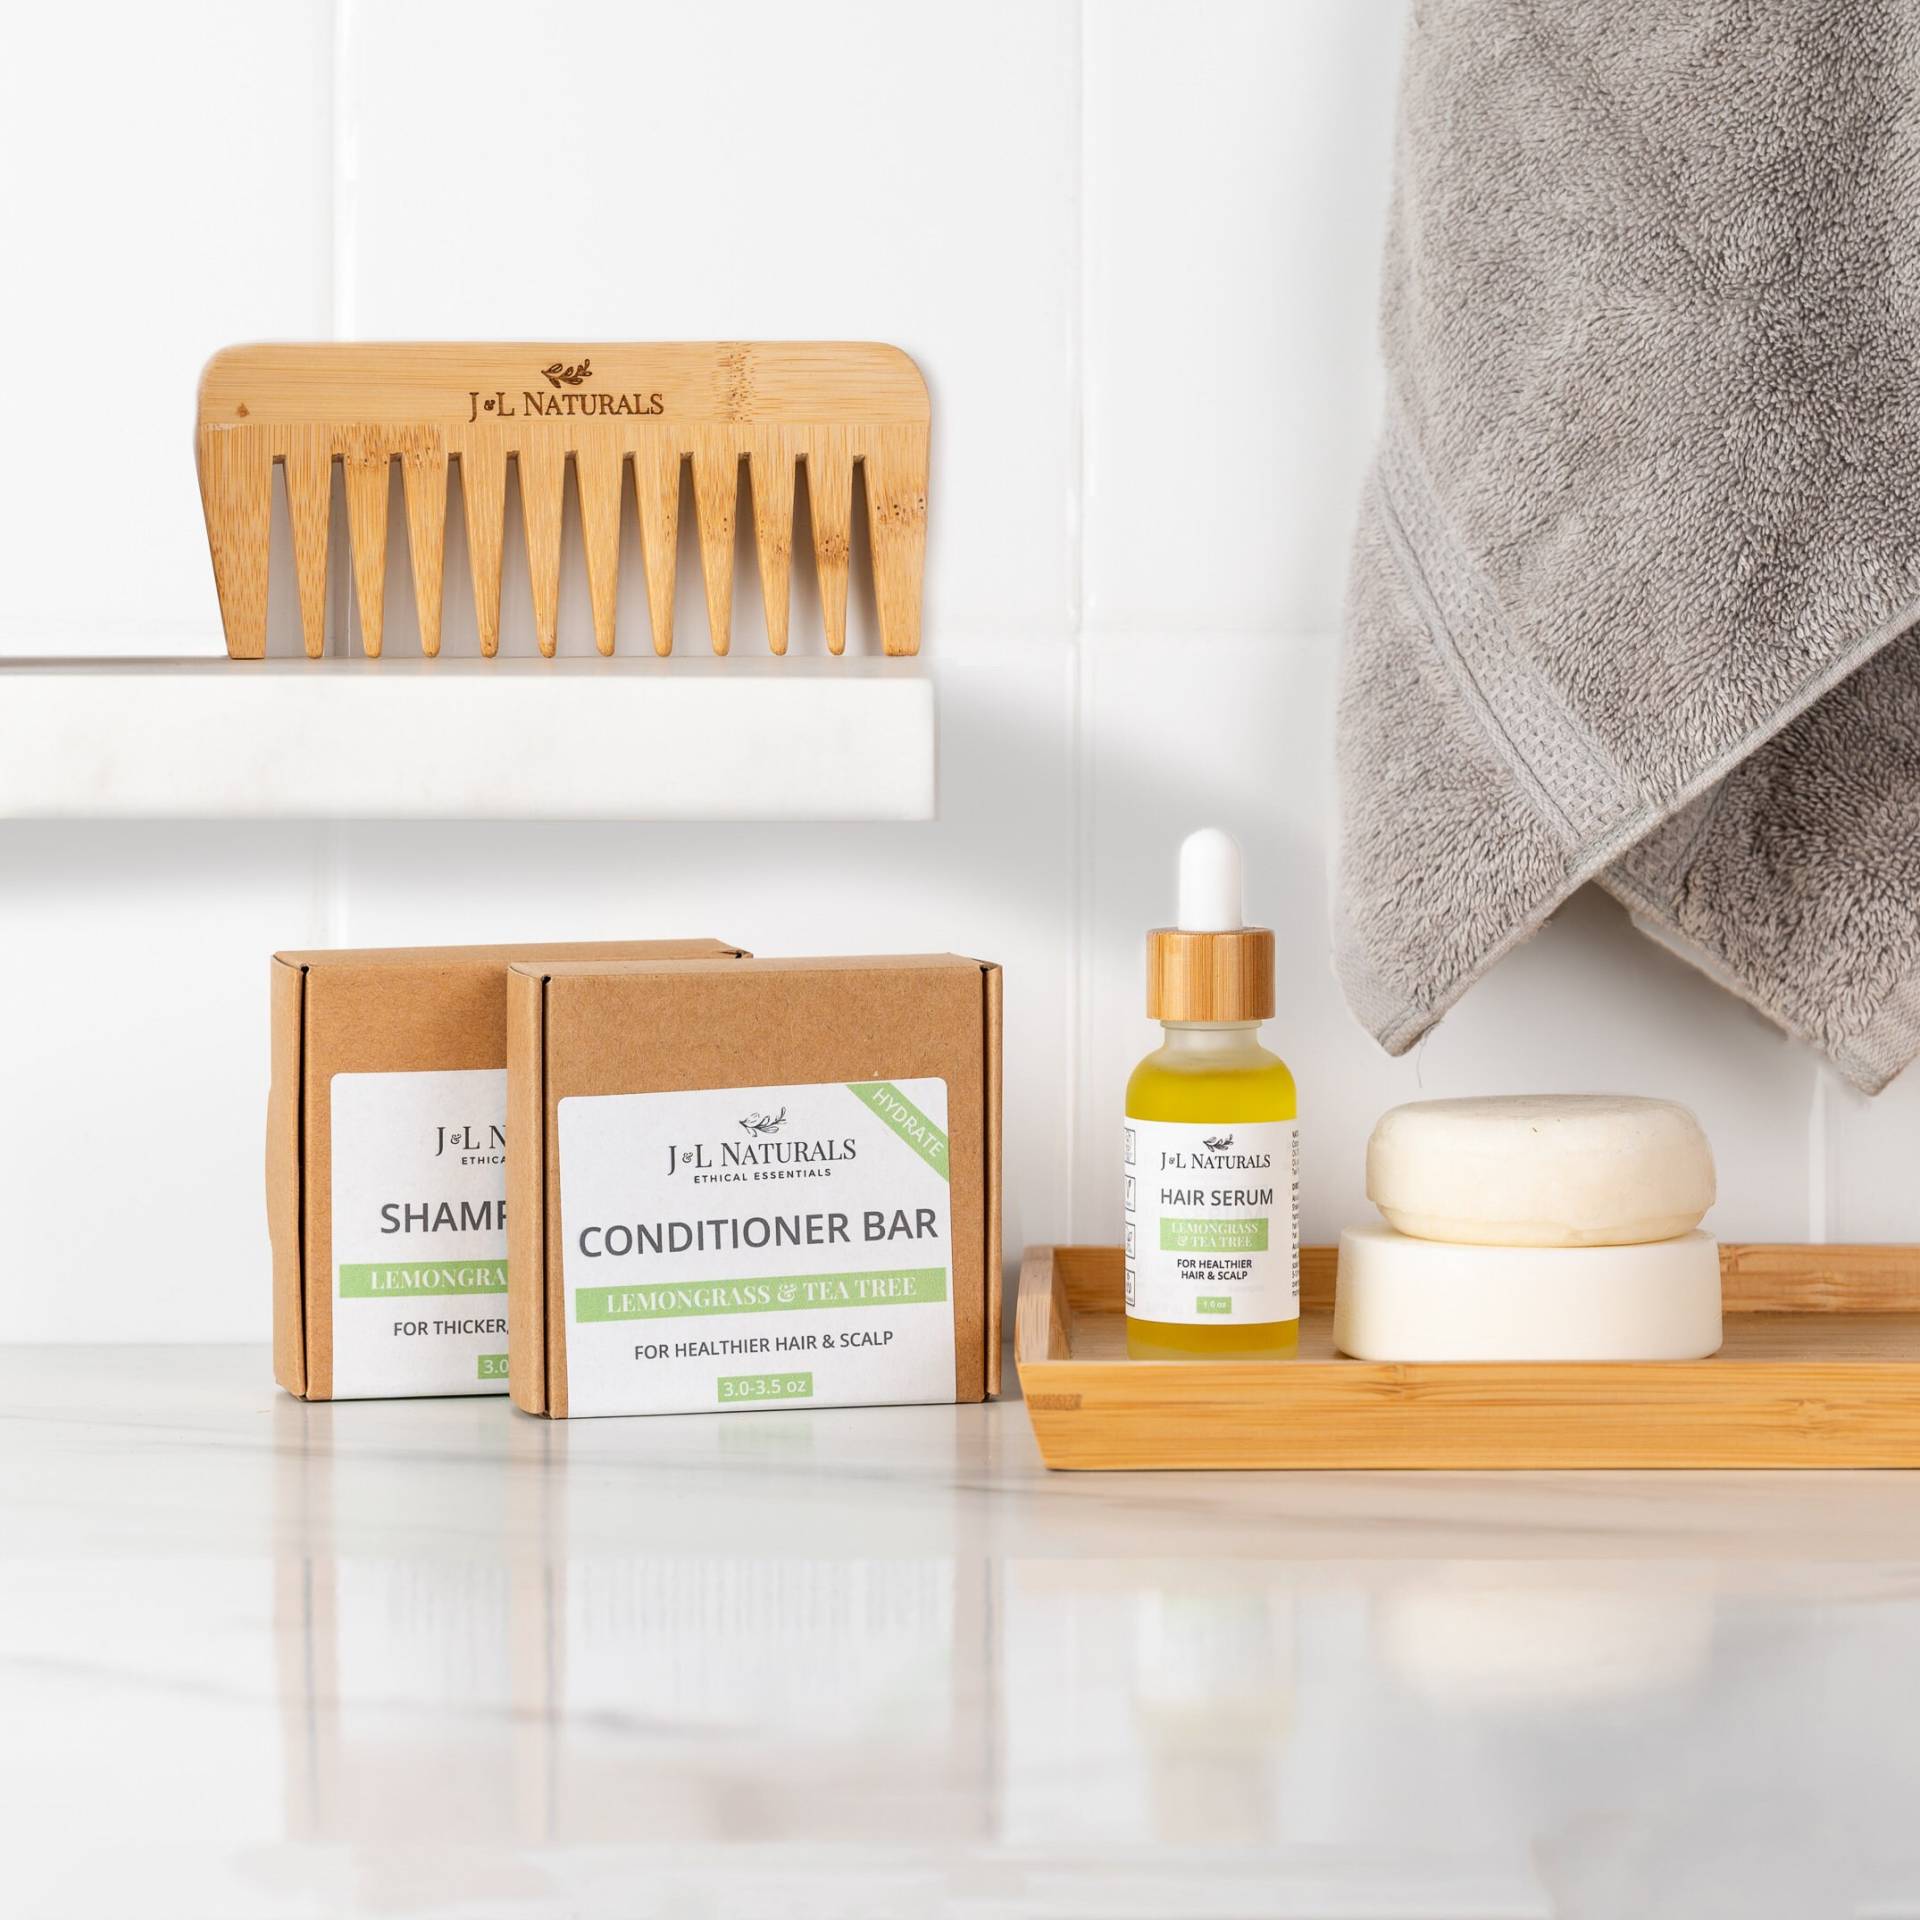 Zitronengras + Teebaum | Hydratisierendes Haar Kit Natürliche Sulfatfreie Haarpflege Beste Galentines Geschenke Für Freund von JnLNaturals